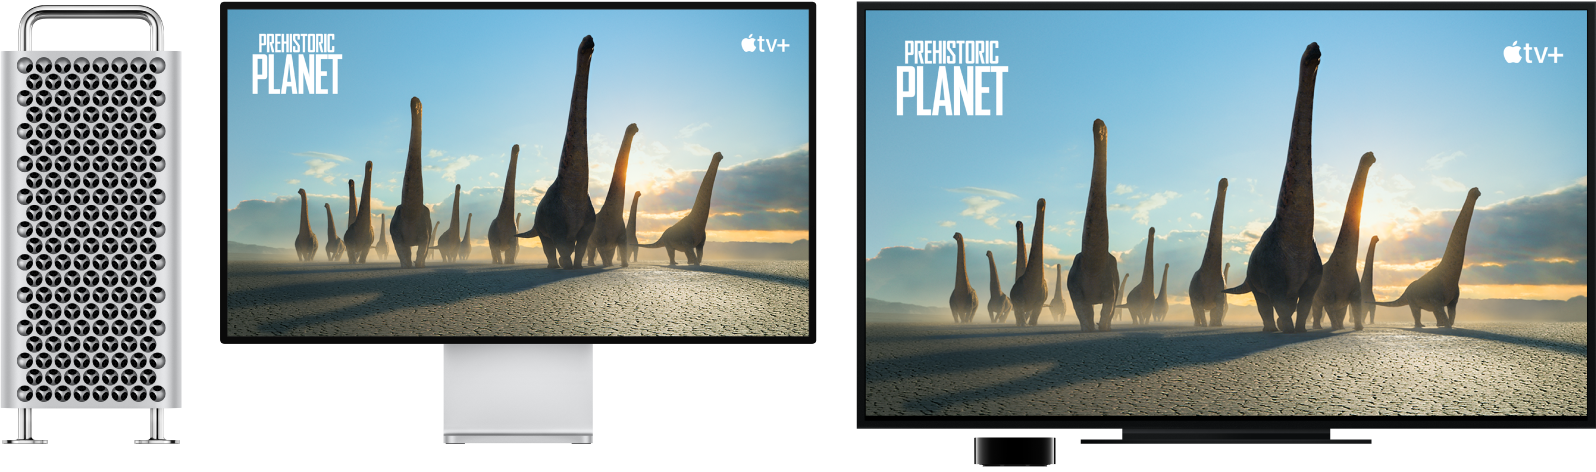 Mac Pro čiji se sadržaj zrcali na velikom HDTV-u pomoću Apple TV-a.